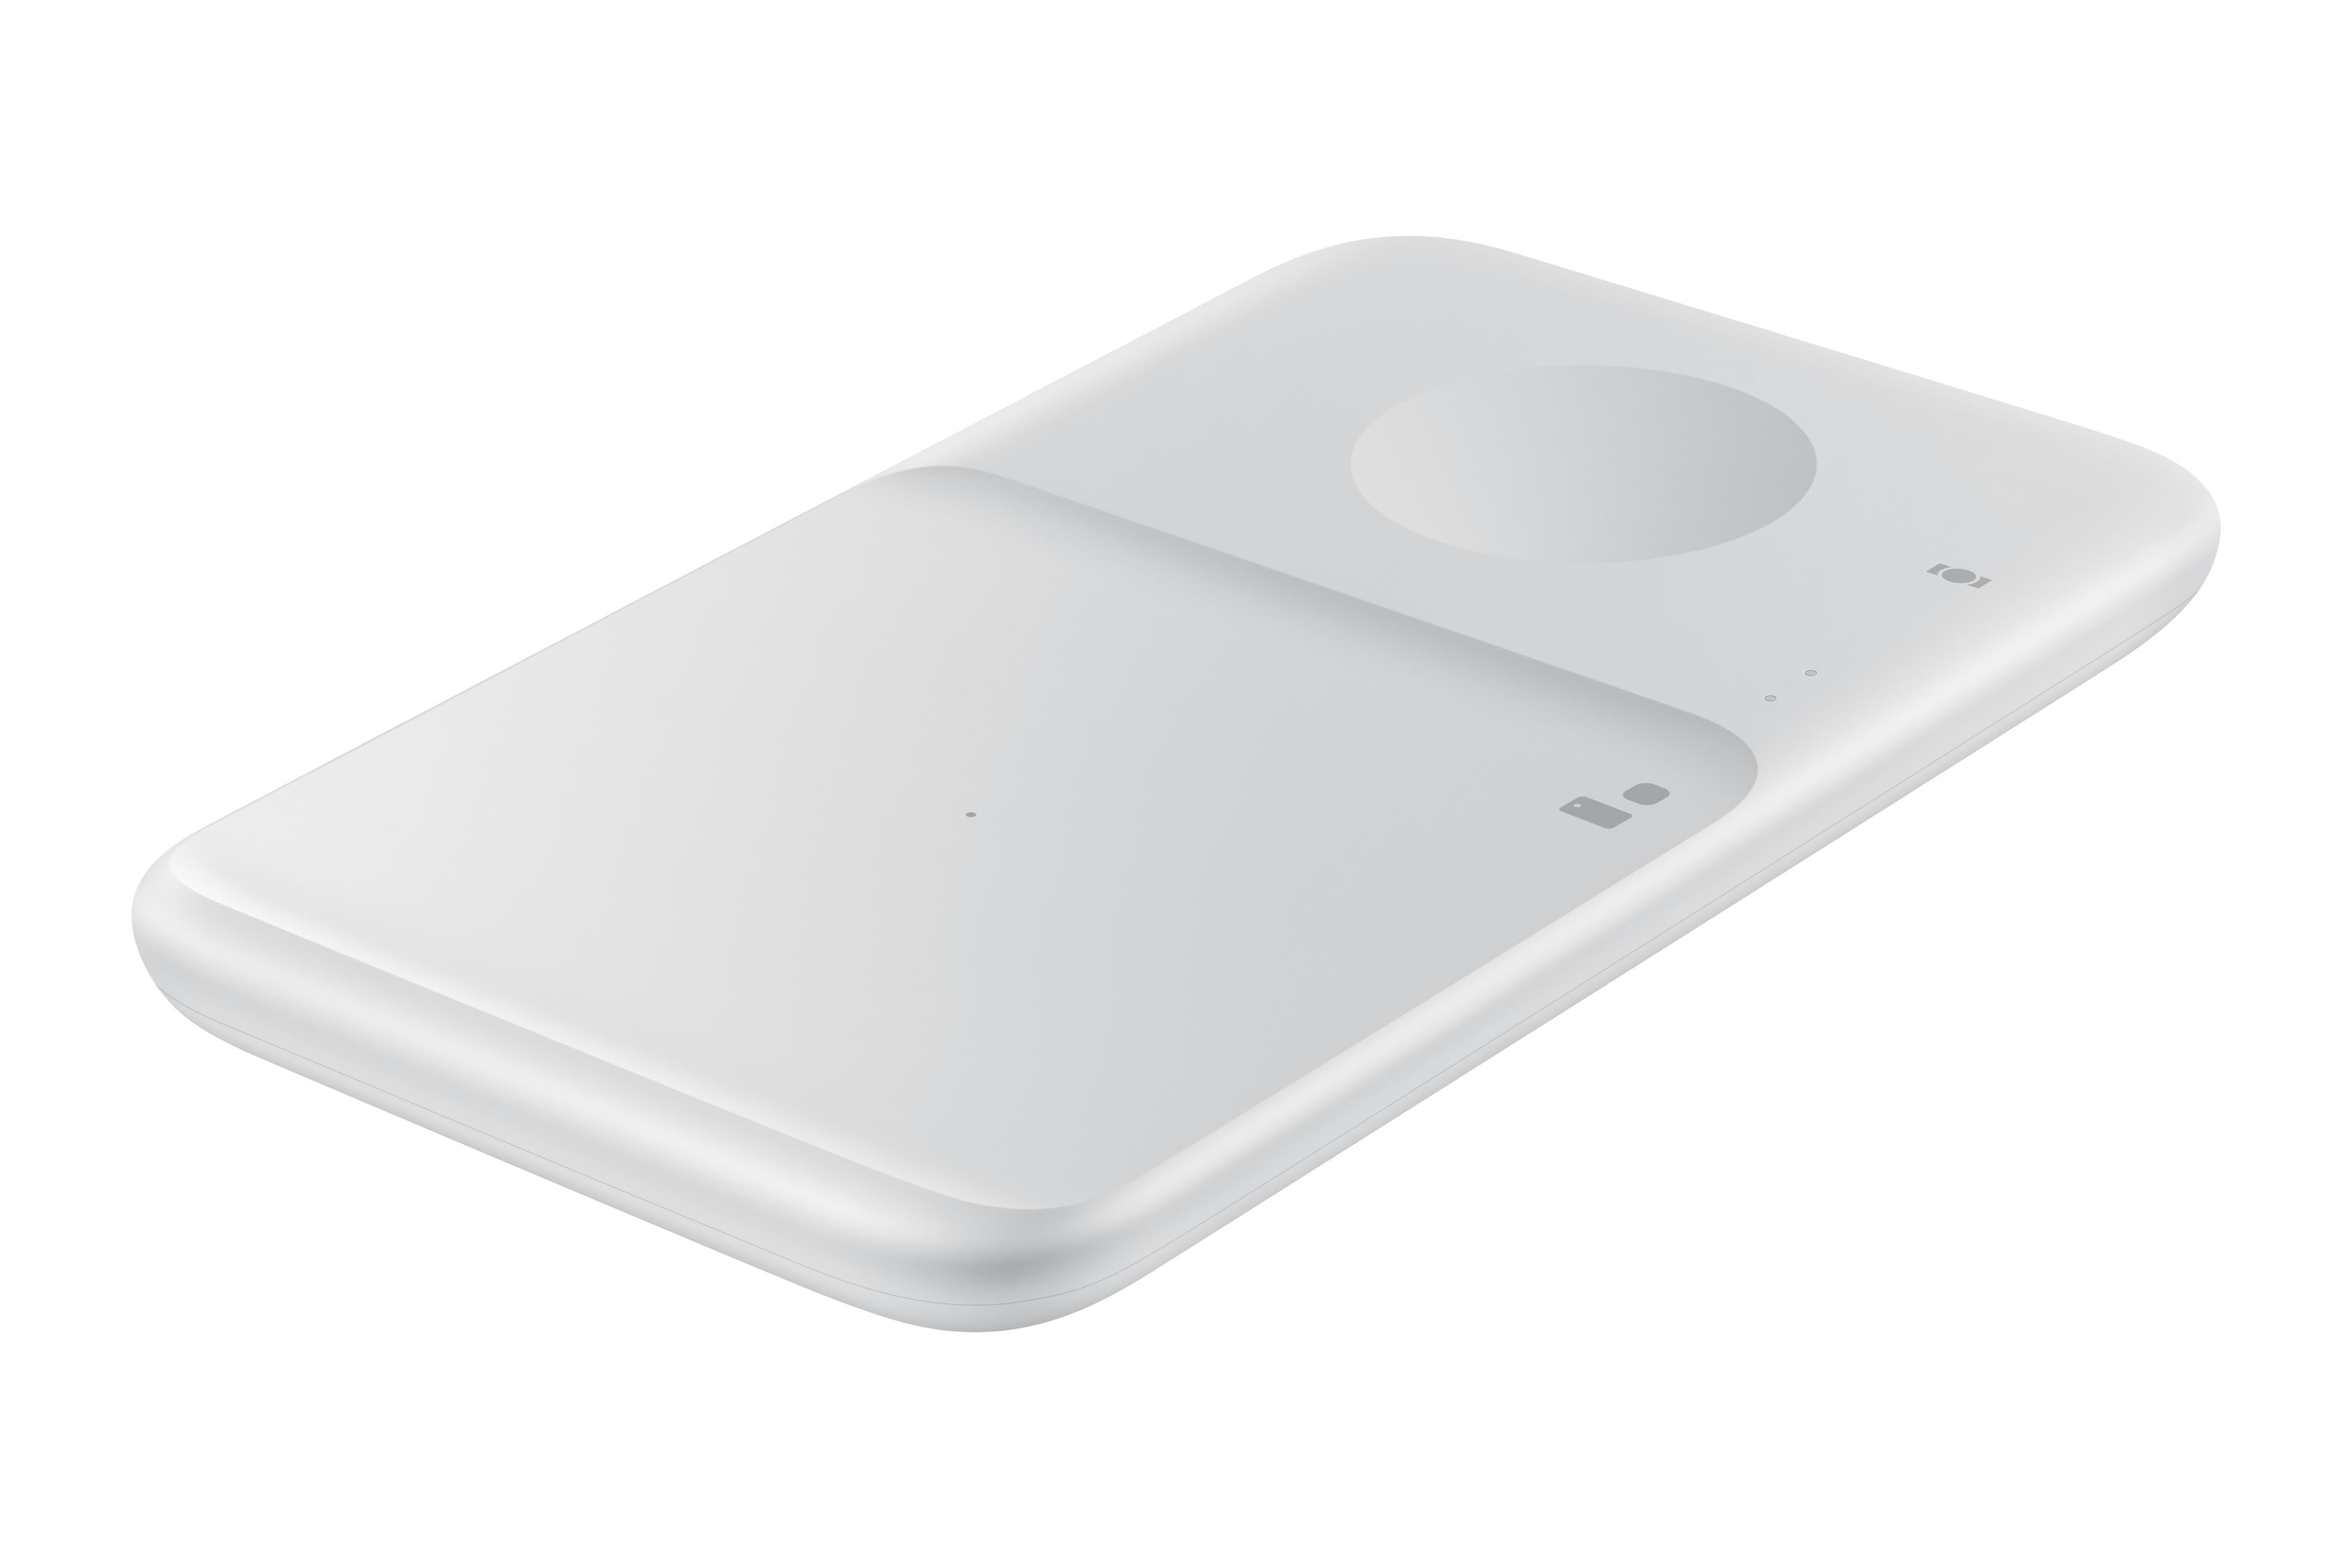 Hersteller, EP-P4300T Duo anderer Samsung, Ladegerät Weiß SAMSUNG Smartphones